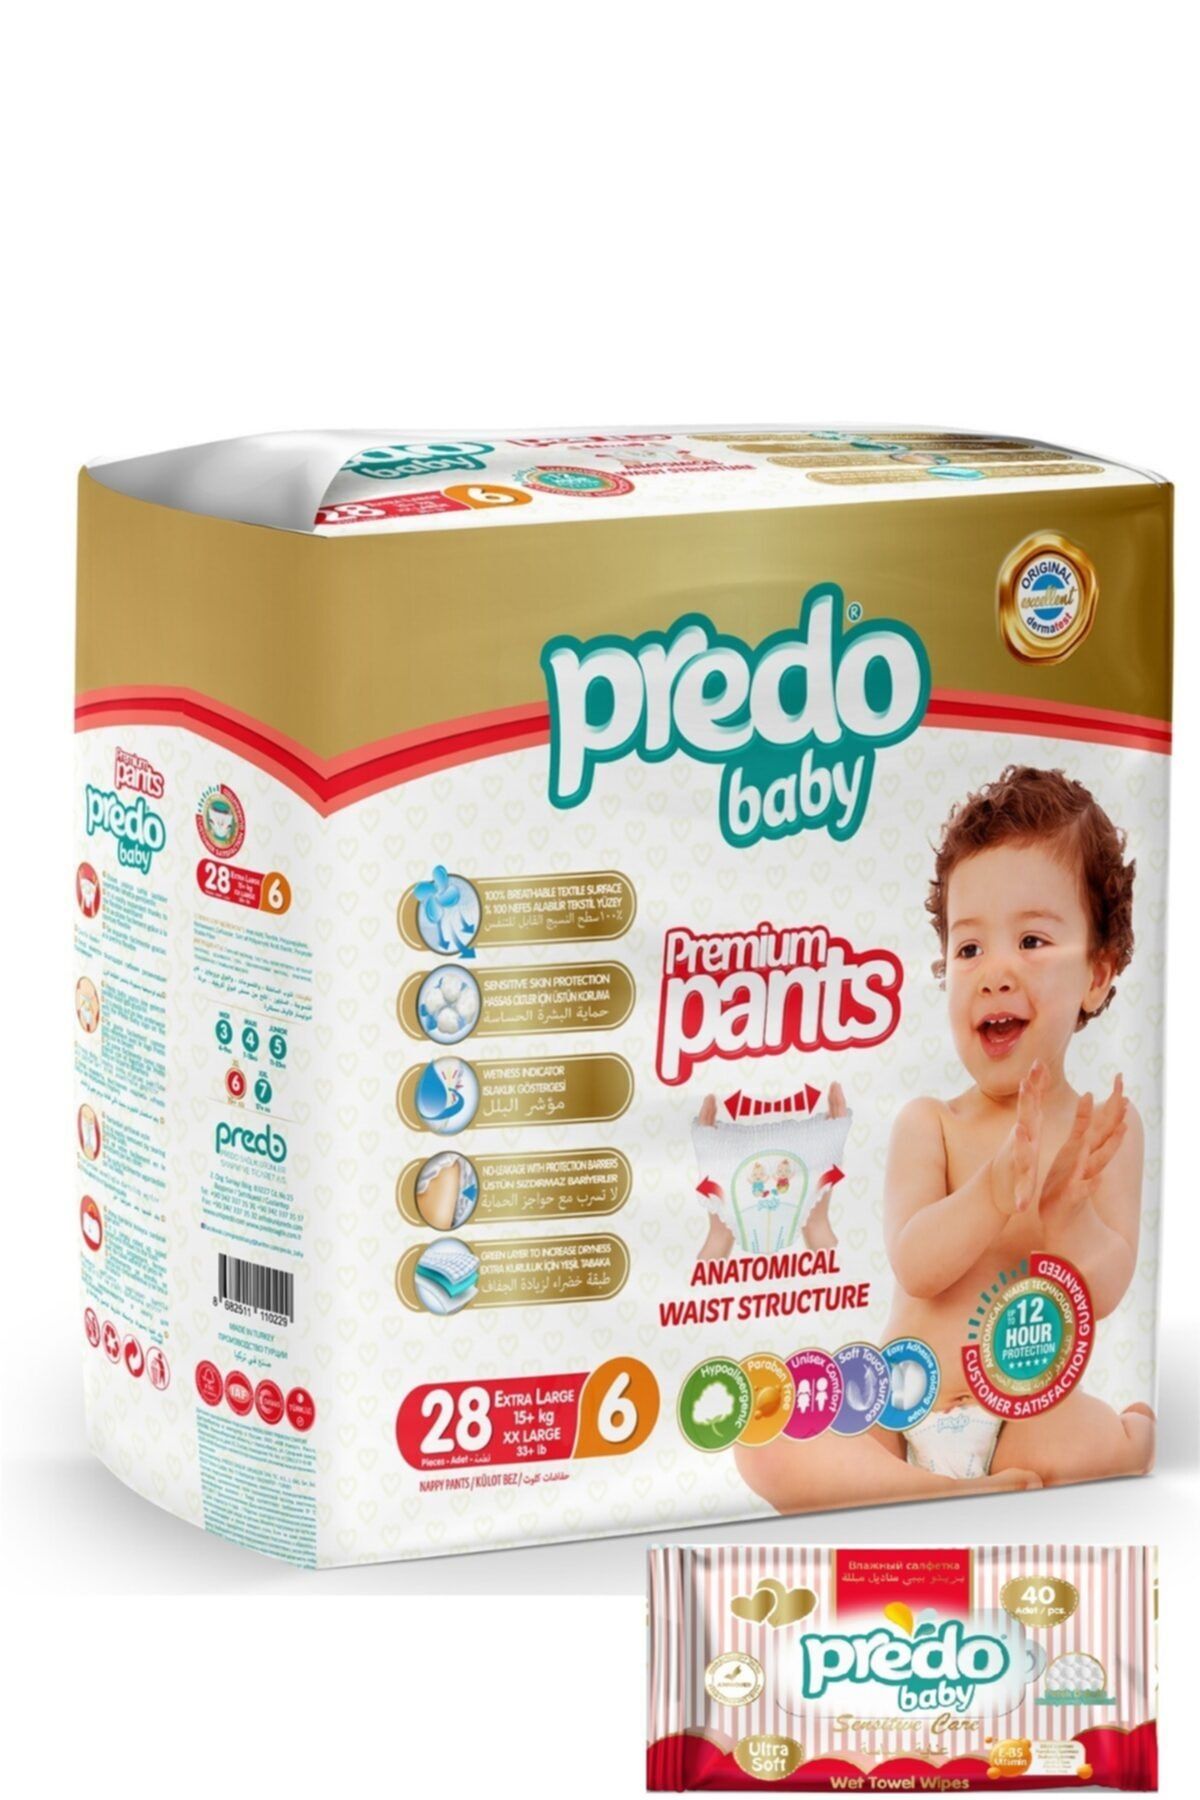 PREDO Premium Pants Külot Bezi 6 Numara 28 Adet + Islak Mendil 40'lı